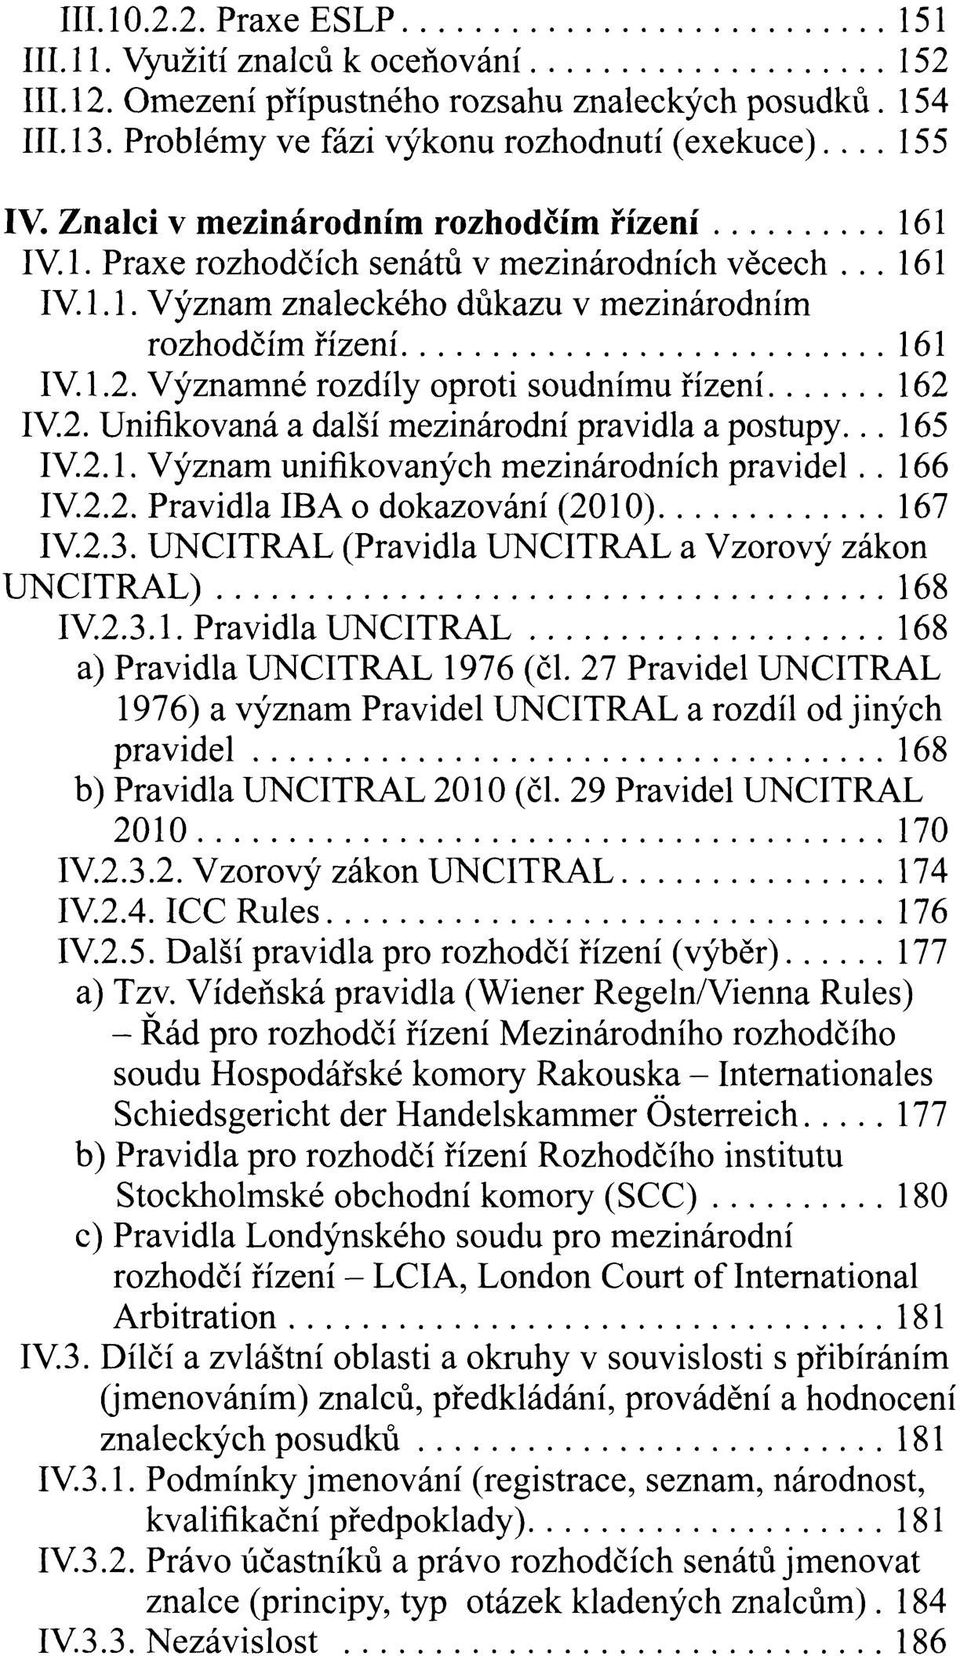 Významné rozdíly oproti soudnímu řízení 162 IV.2. Unifikovaná a další mezinárodní pravidla a postupy... 165 IV.2.1. Význam unifikovaných mezinárodních pravidel.. 166 IV.2.2. Pravidla IBA o dokazování (2010) 167 IV.